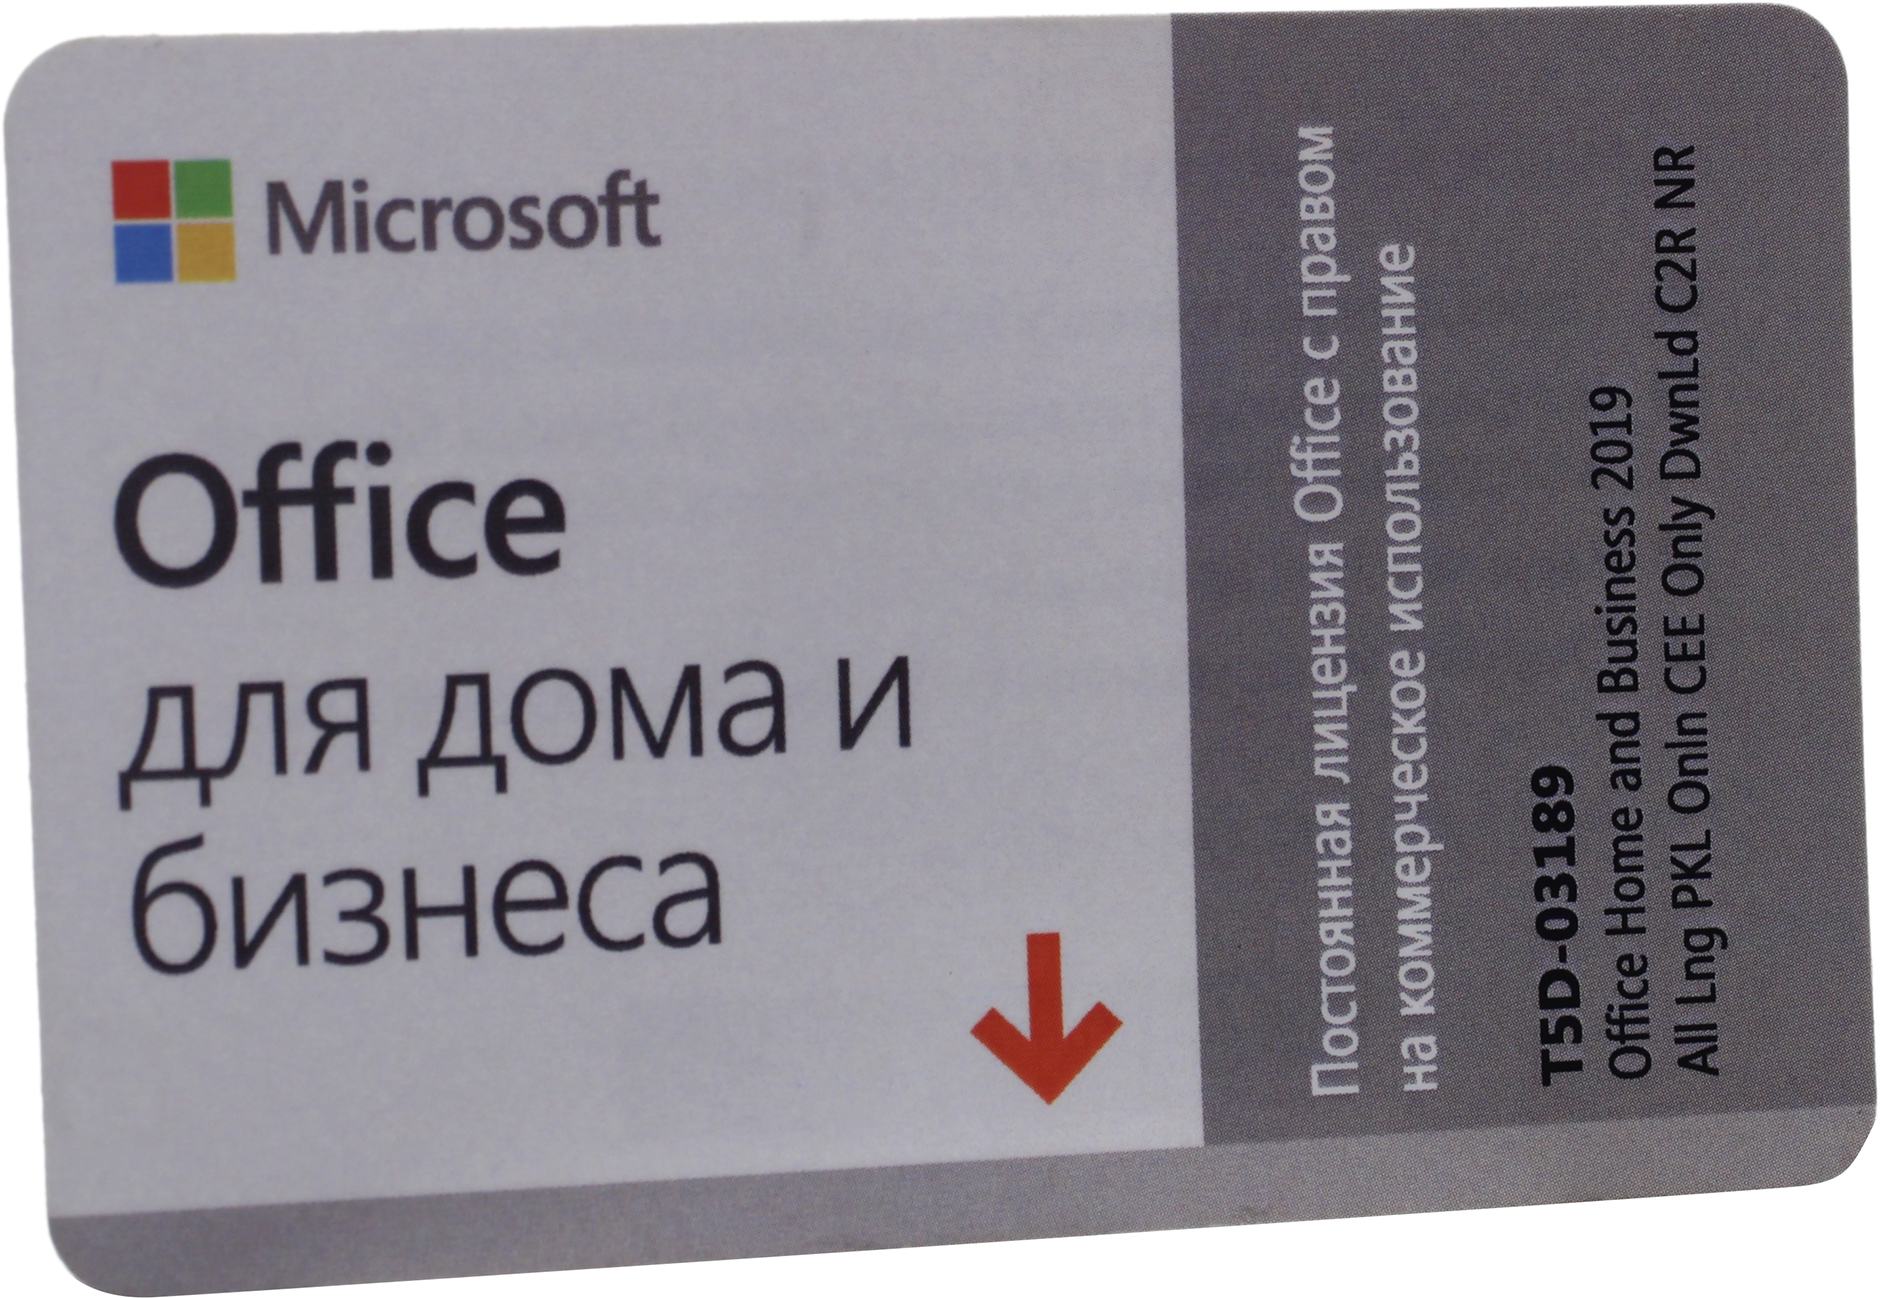 Офисный пакет Microsoft Office 2019 для дома и бизнеса, All Languages, на 1 ПК